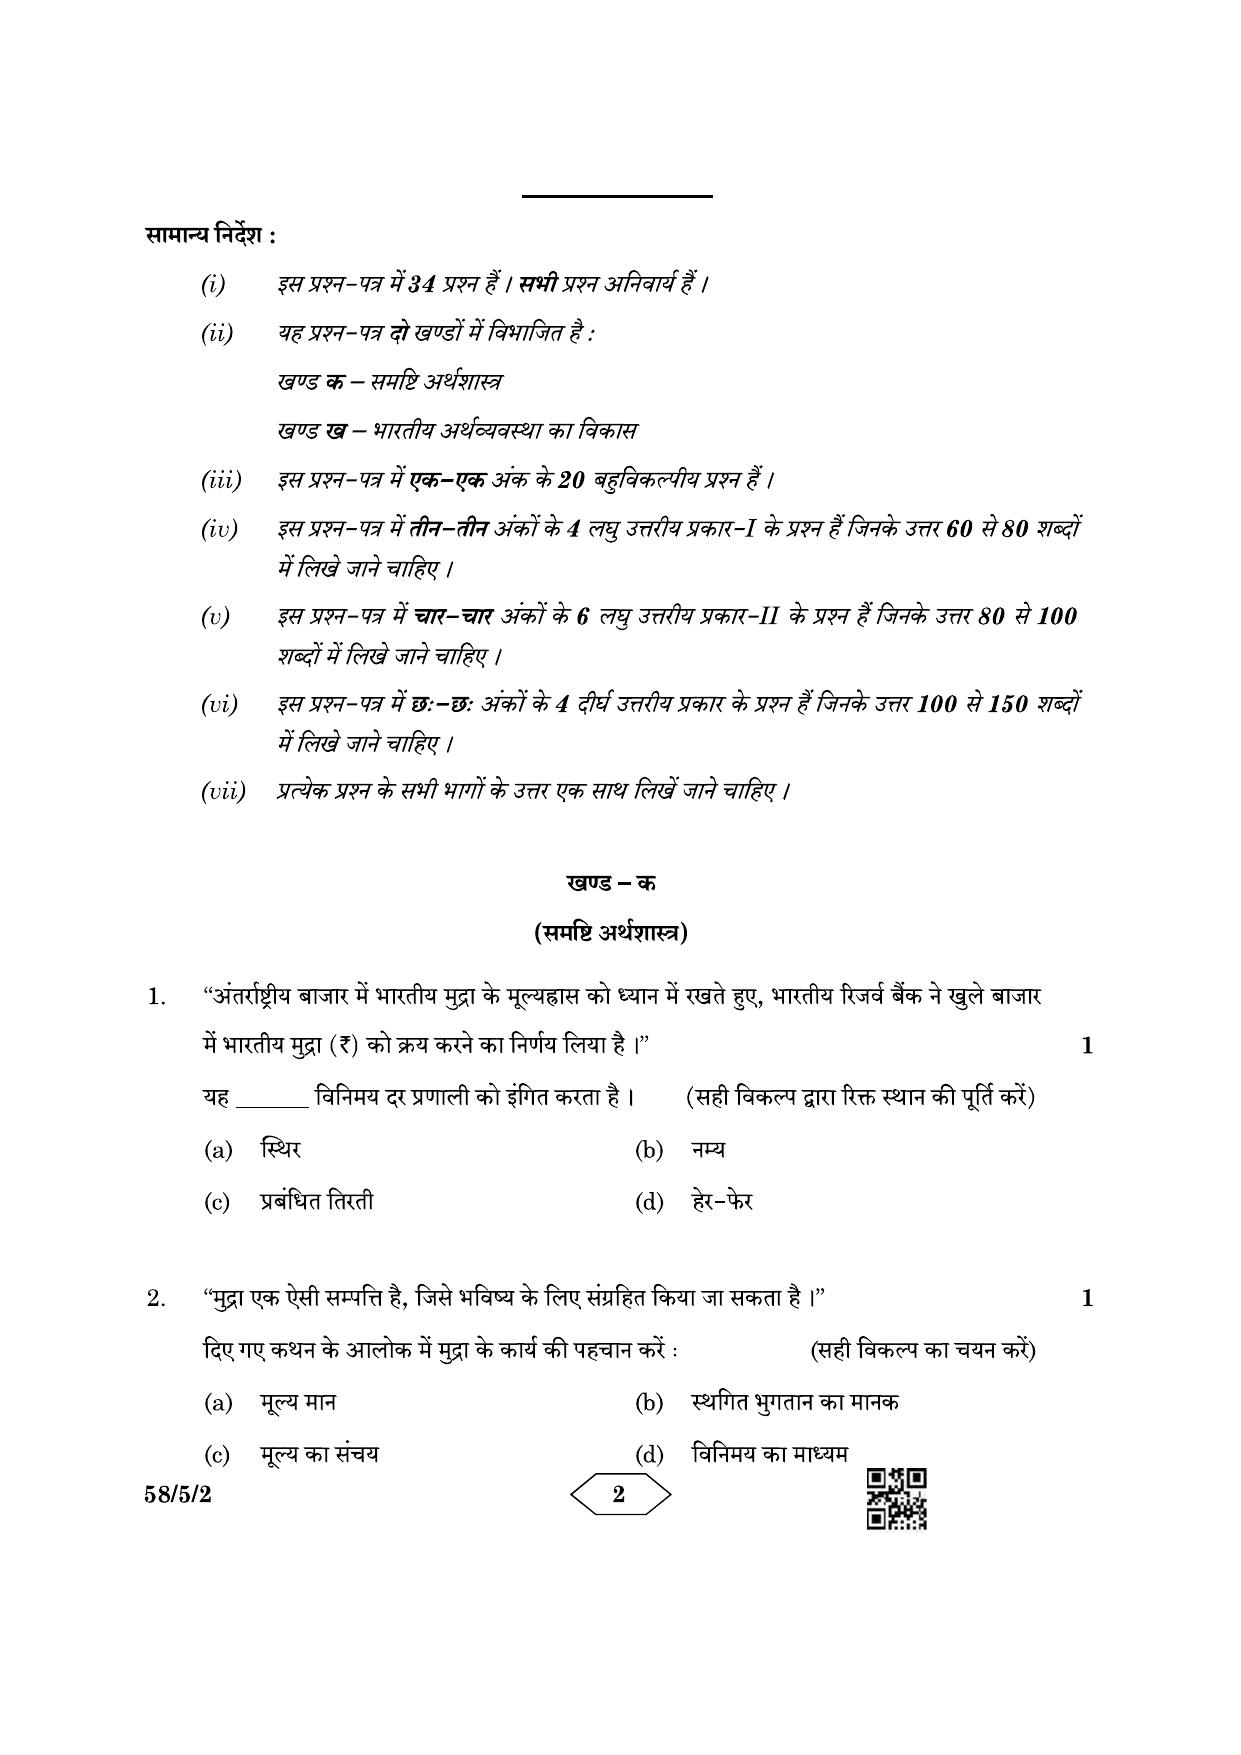 CBSE Class 12 58-5-2 Economics 2023 Question Paper - Page 2